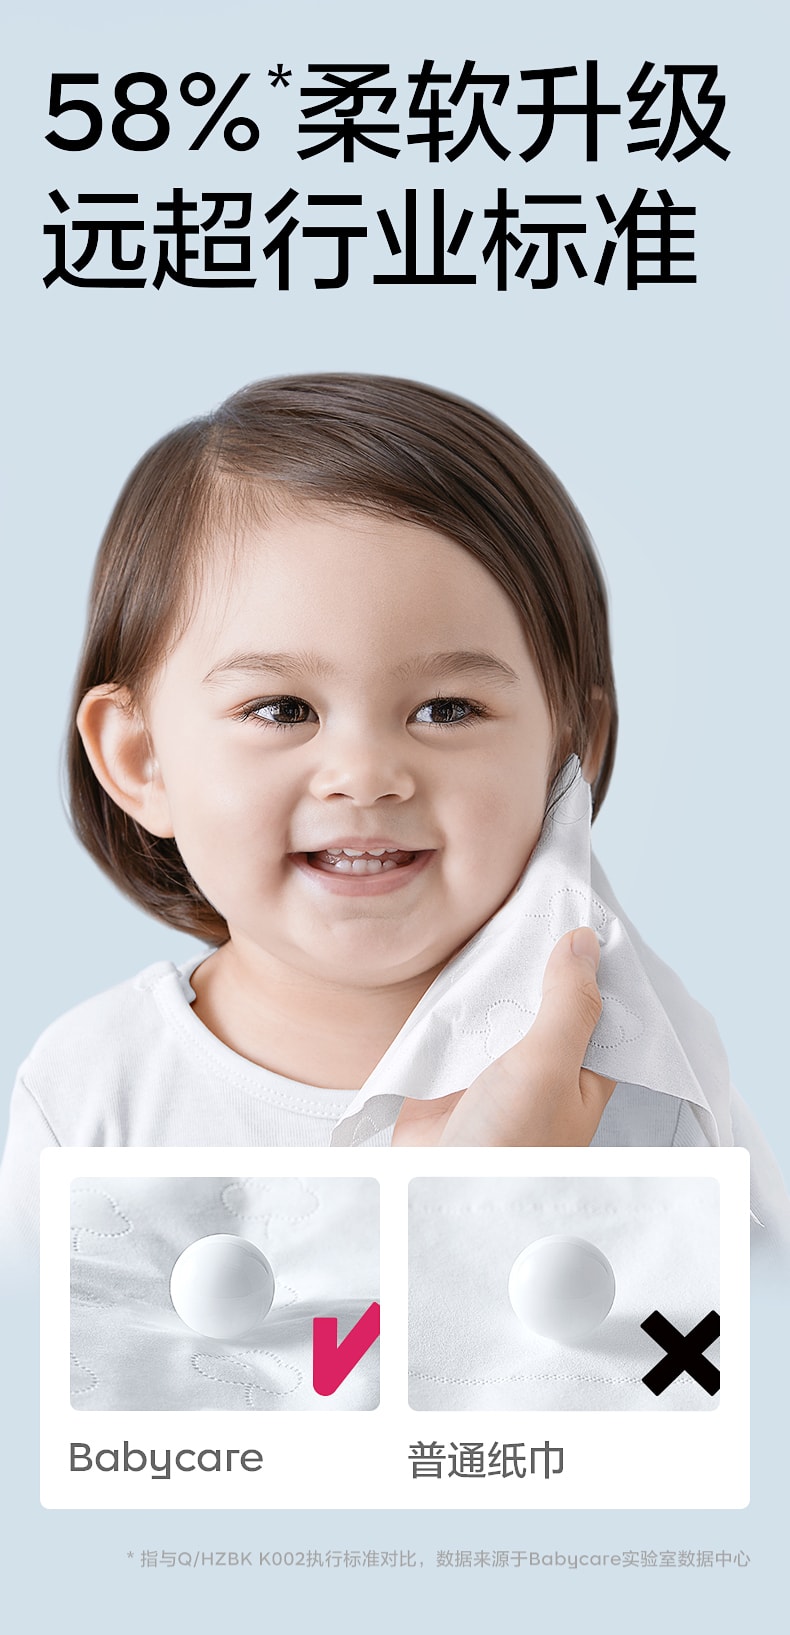 【中国直邮】BC BABYCARE 137mm*190mm 80抽/包*3包 抽取式保湿纸巾 熊柔巾婴儿保湿纸巾便携